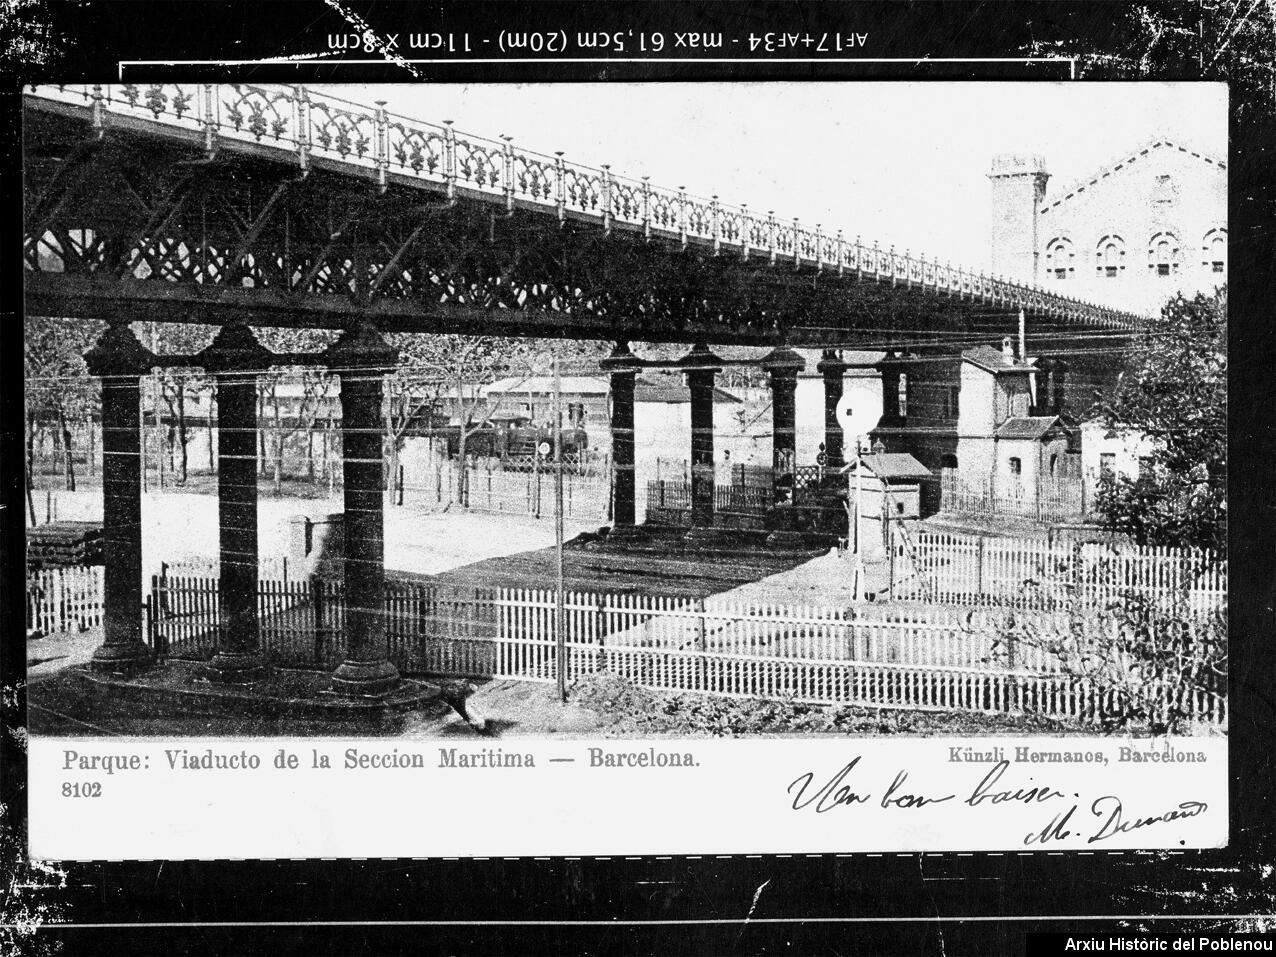 22112 Pont exposició 1905